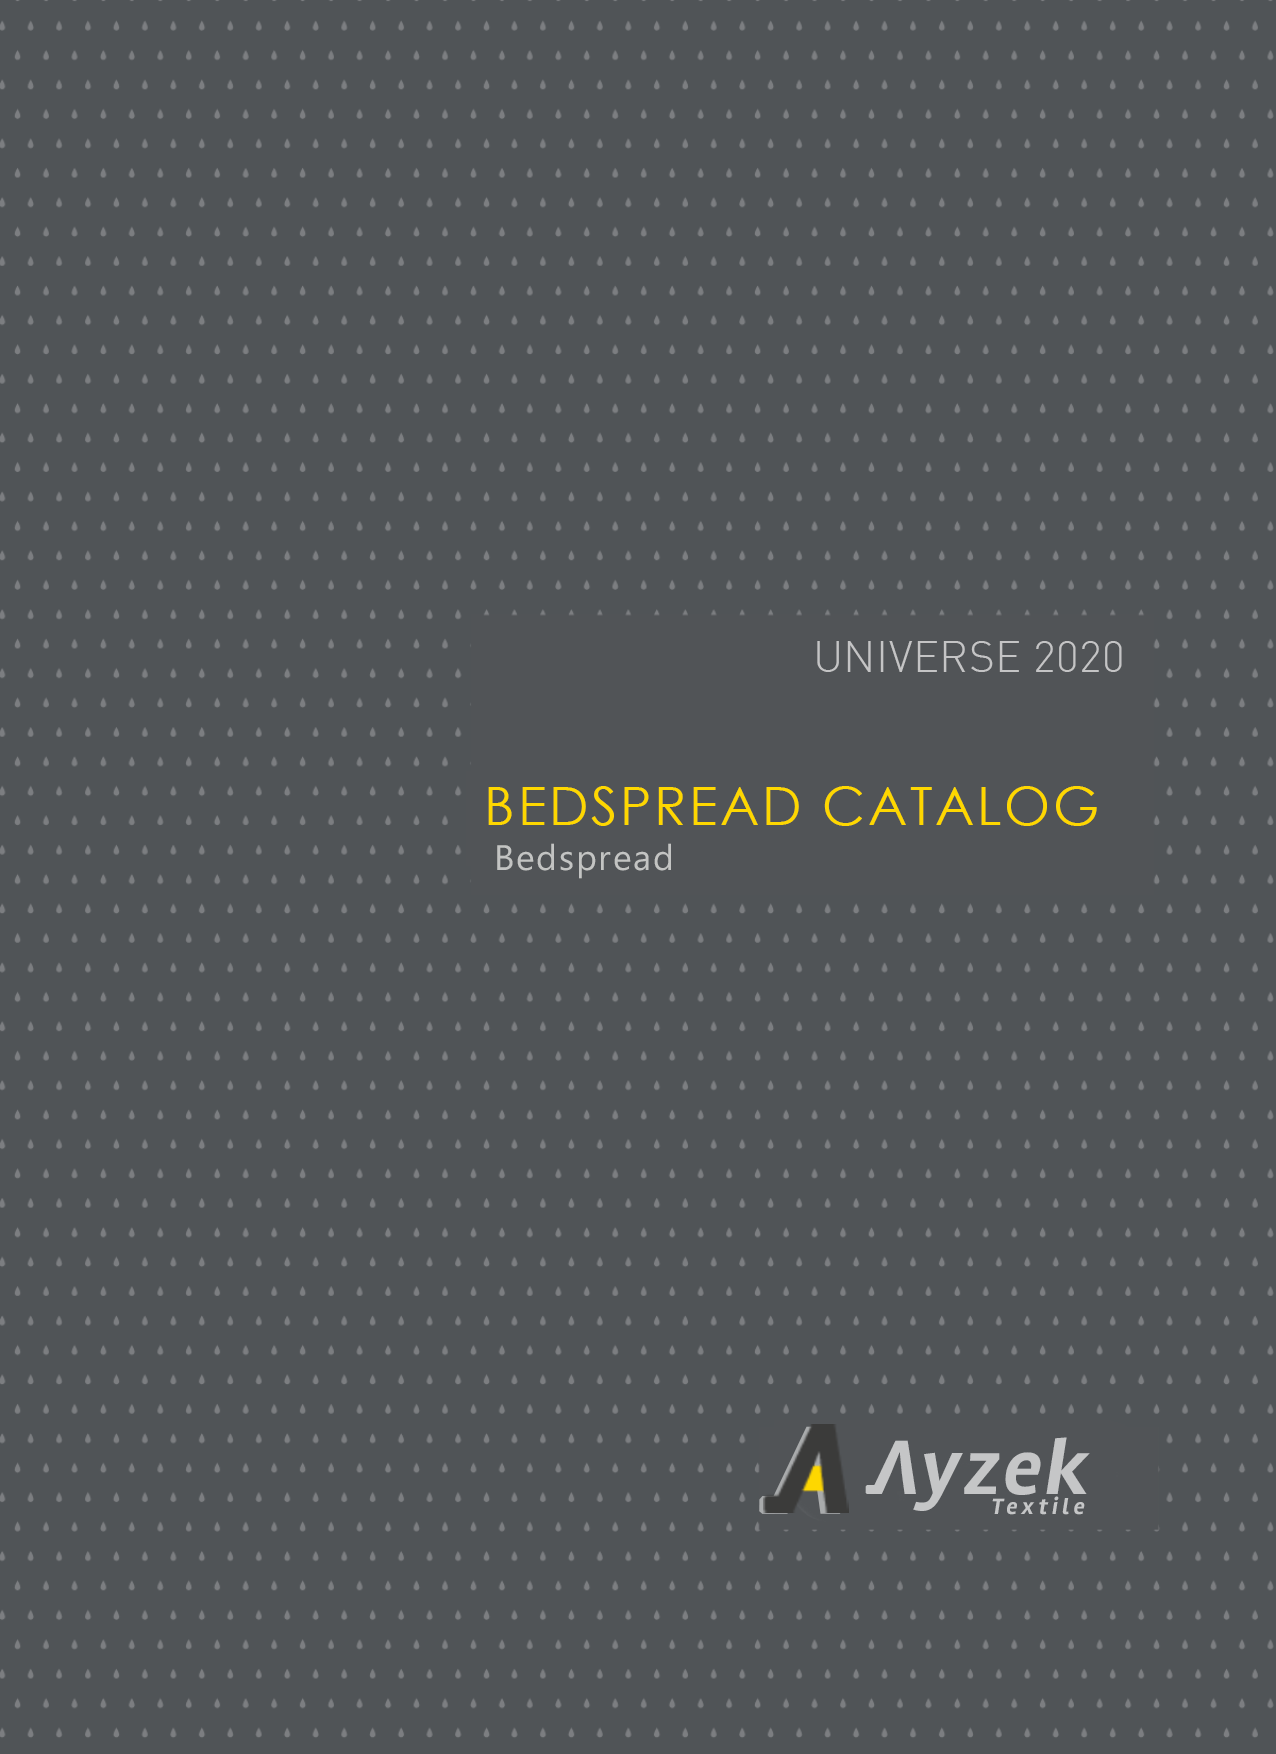 Ayzek Textile Bedspread Catalog